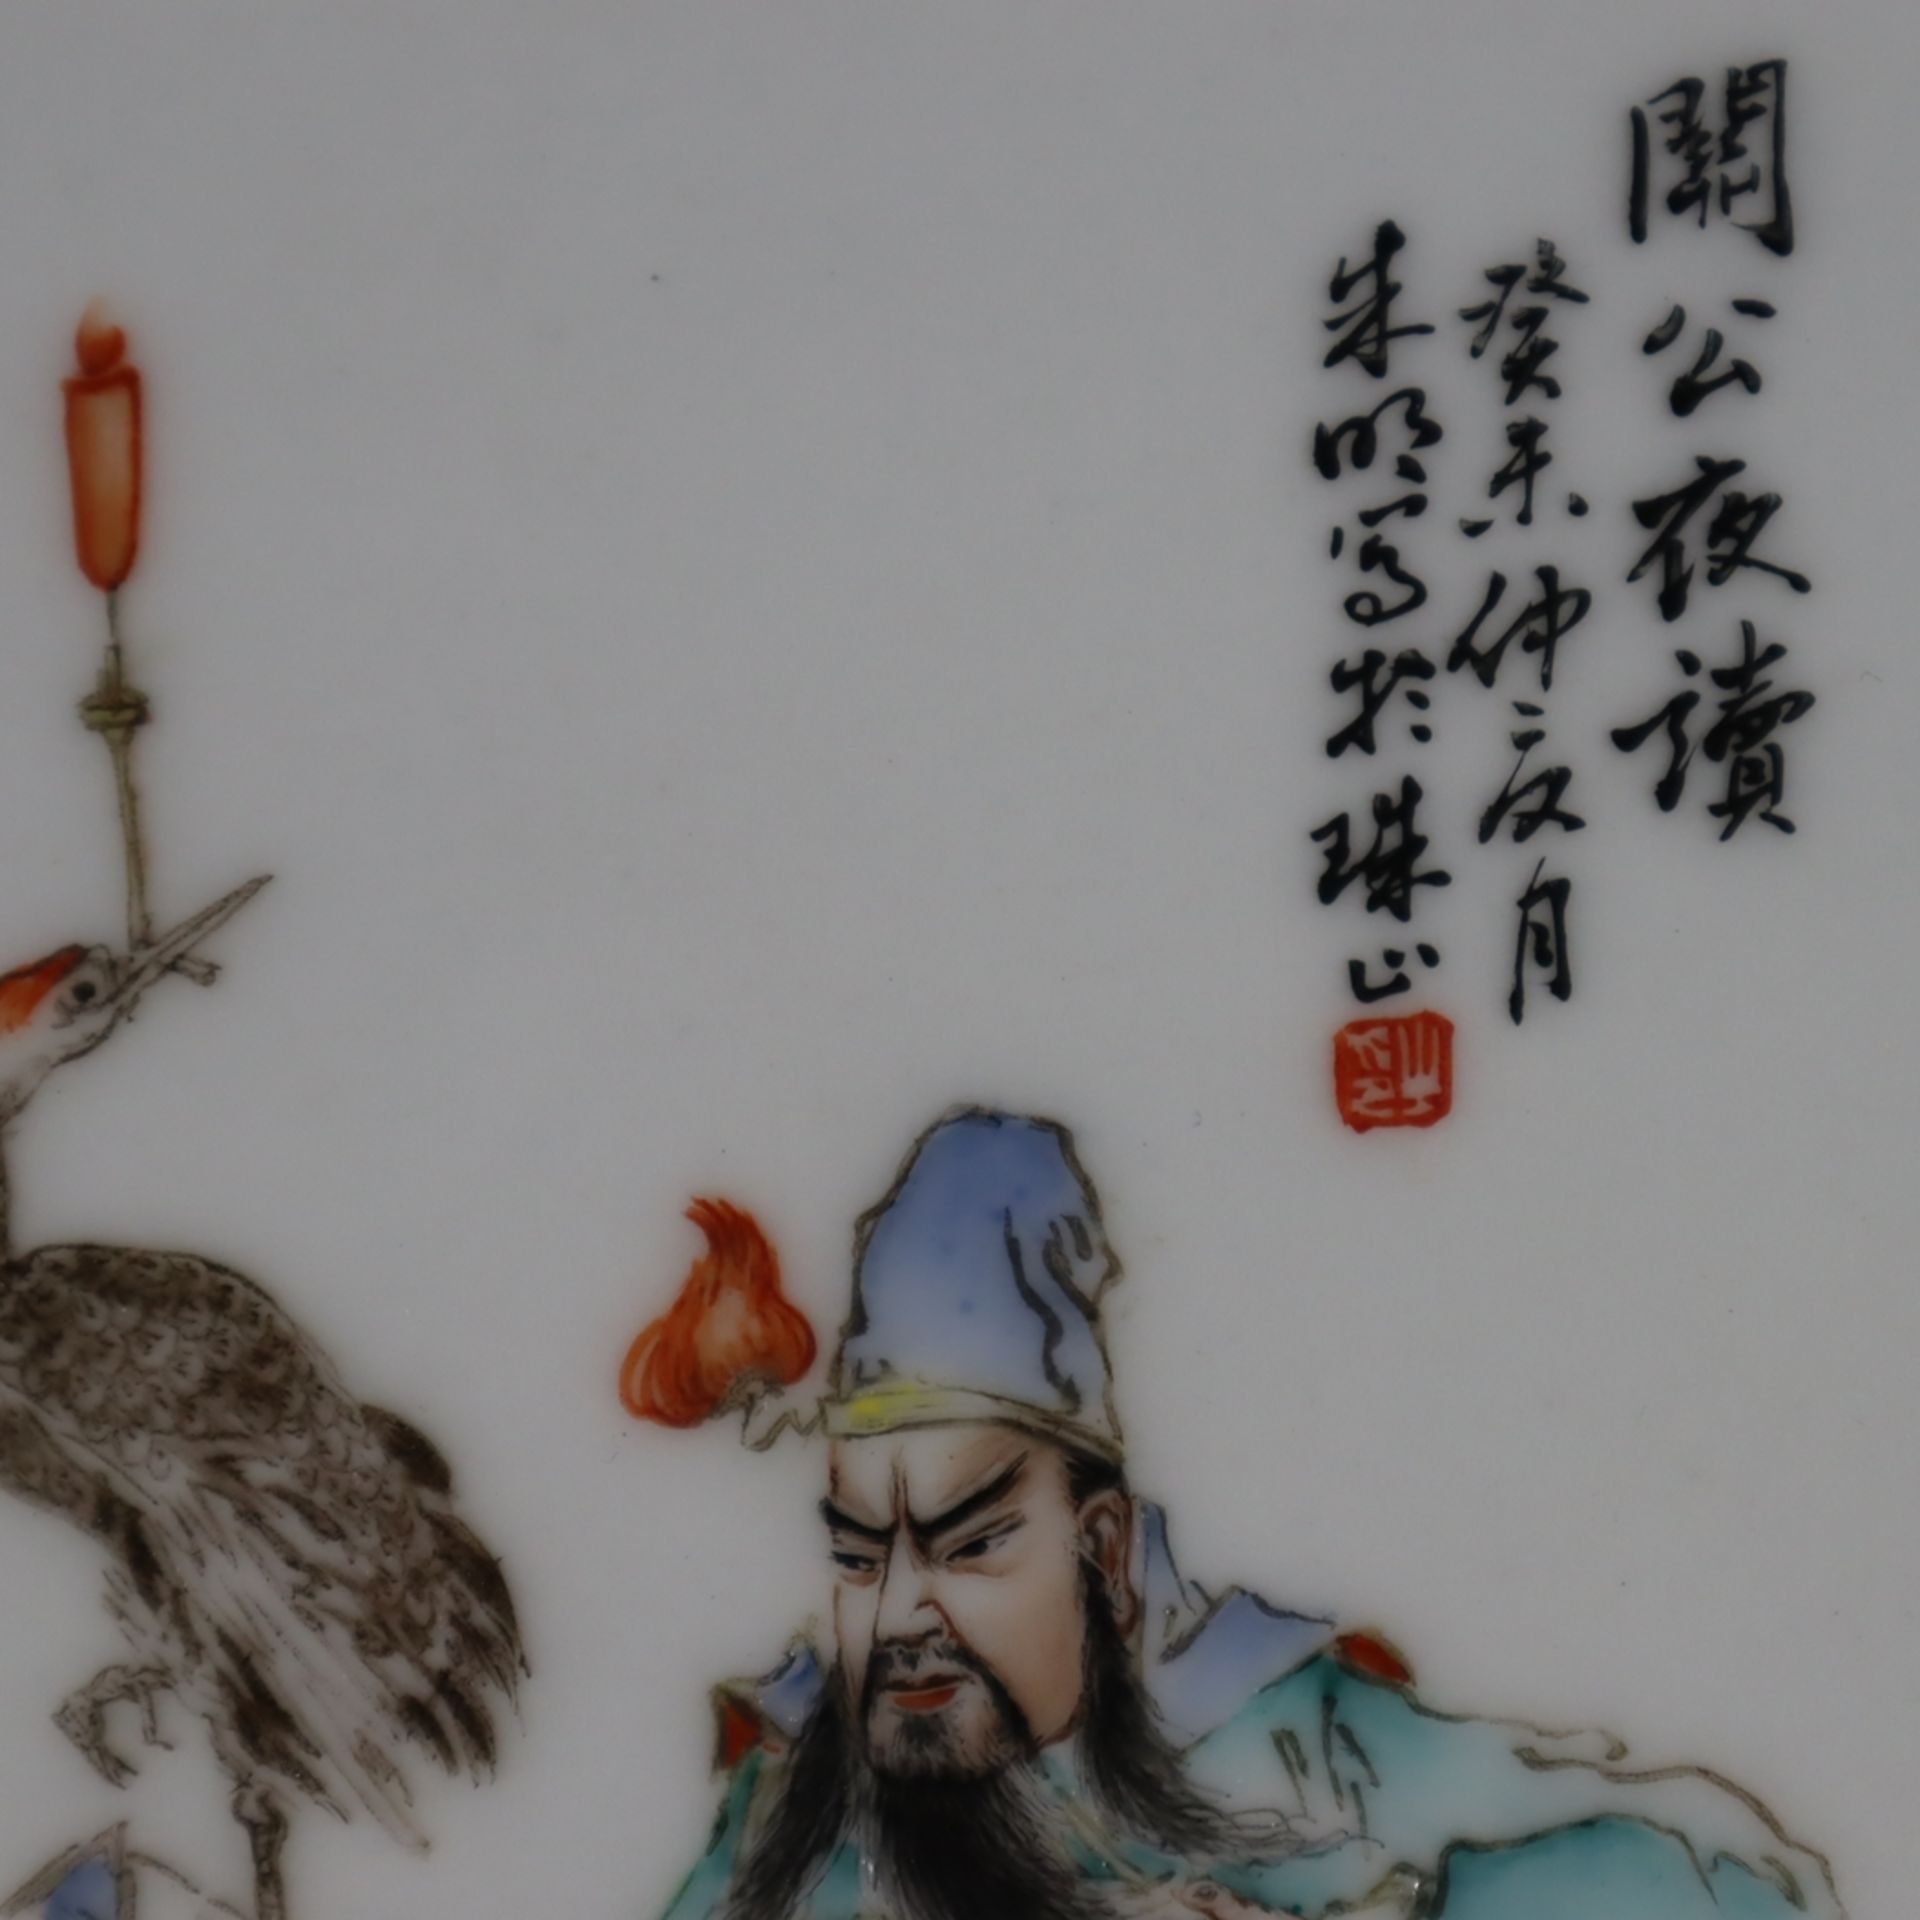 Famille rose-Porzellanbild - China 20.Jh., in polychromen Emailfarben gemalte Figur des Generals Gu - Bild 6 aus 6